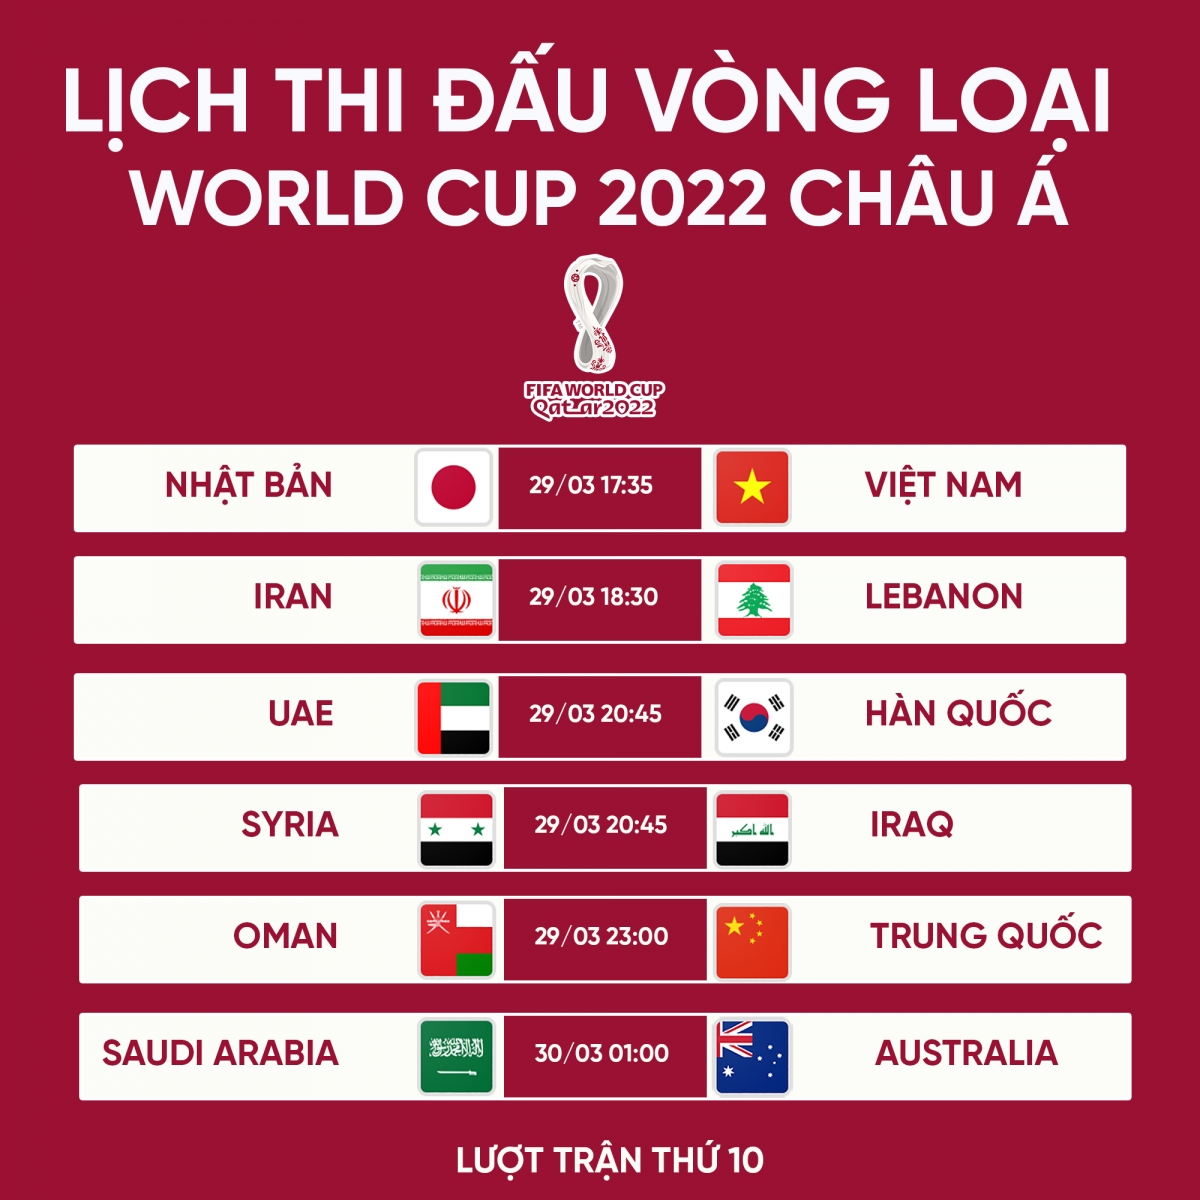 Lịch thi đấu vòng loại World Cup 2022 châu Á: ĐT Nhật Bản đọ sức ĐT Việt Nam | VOV.VN